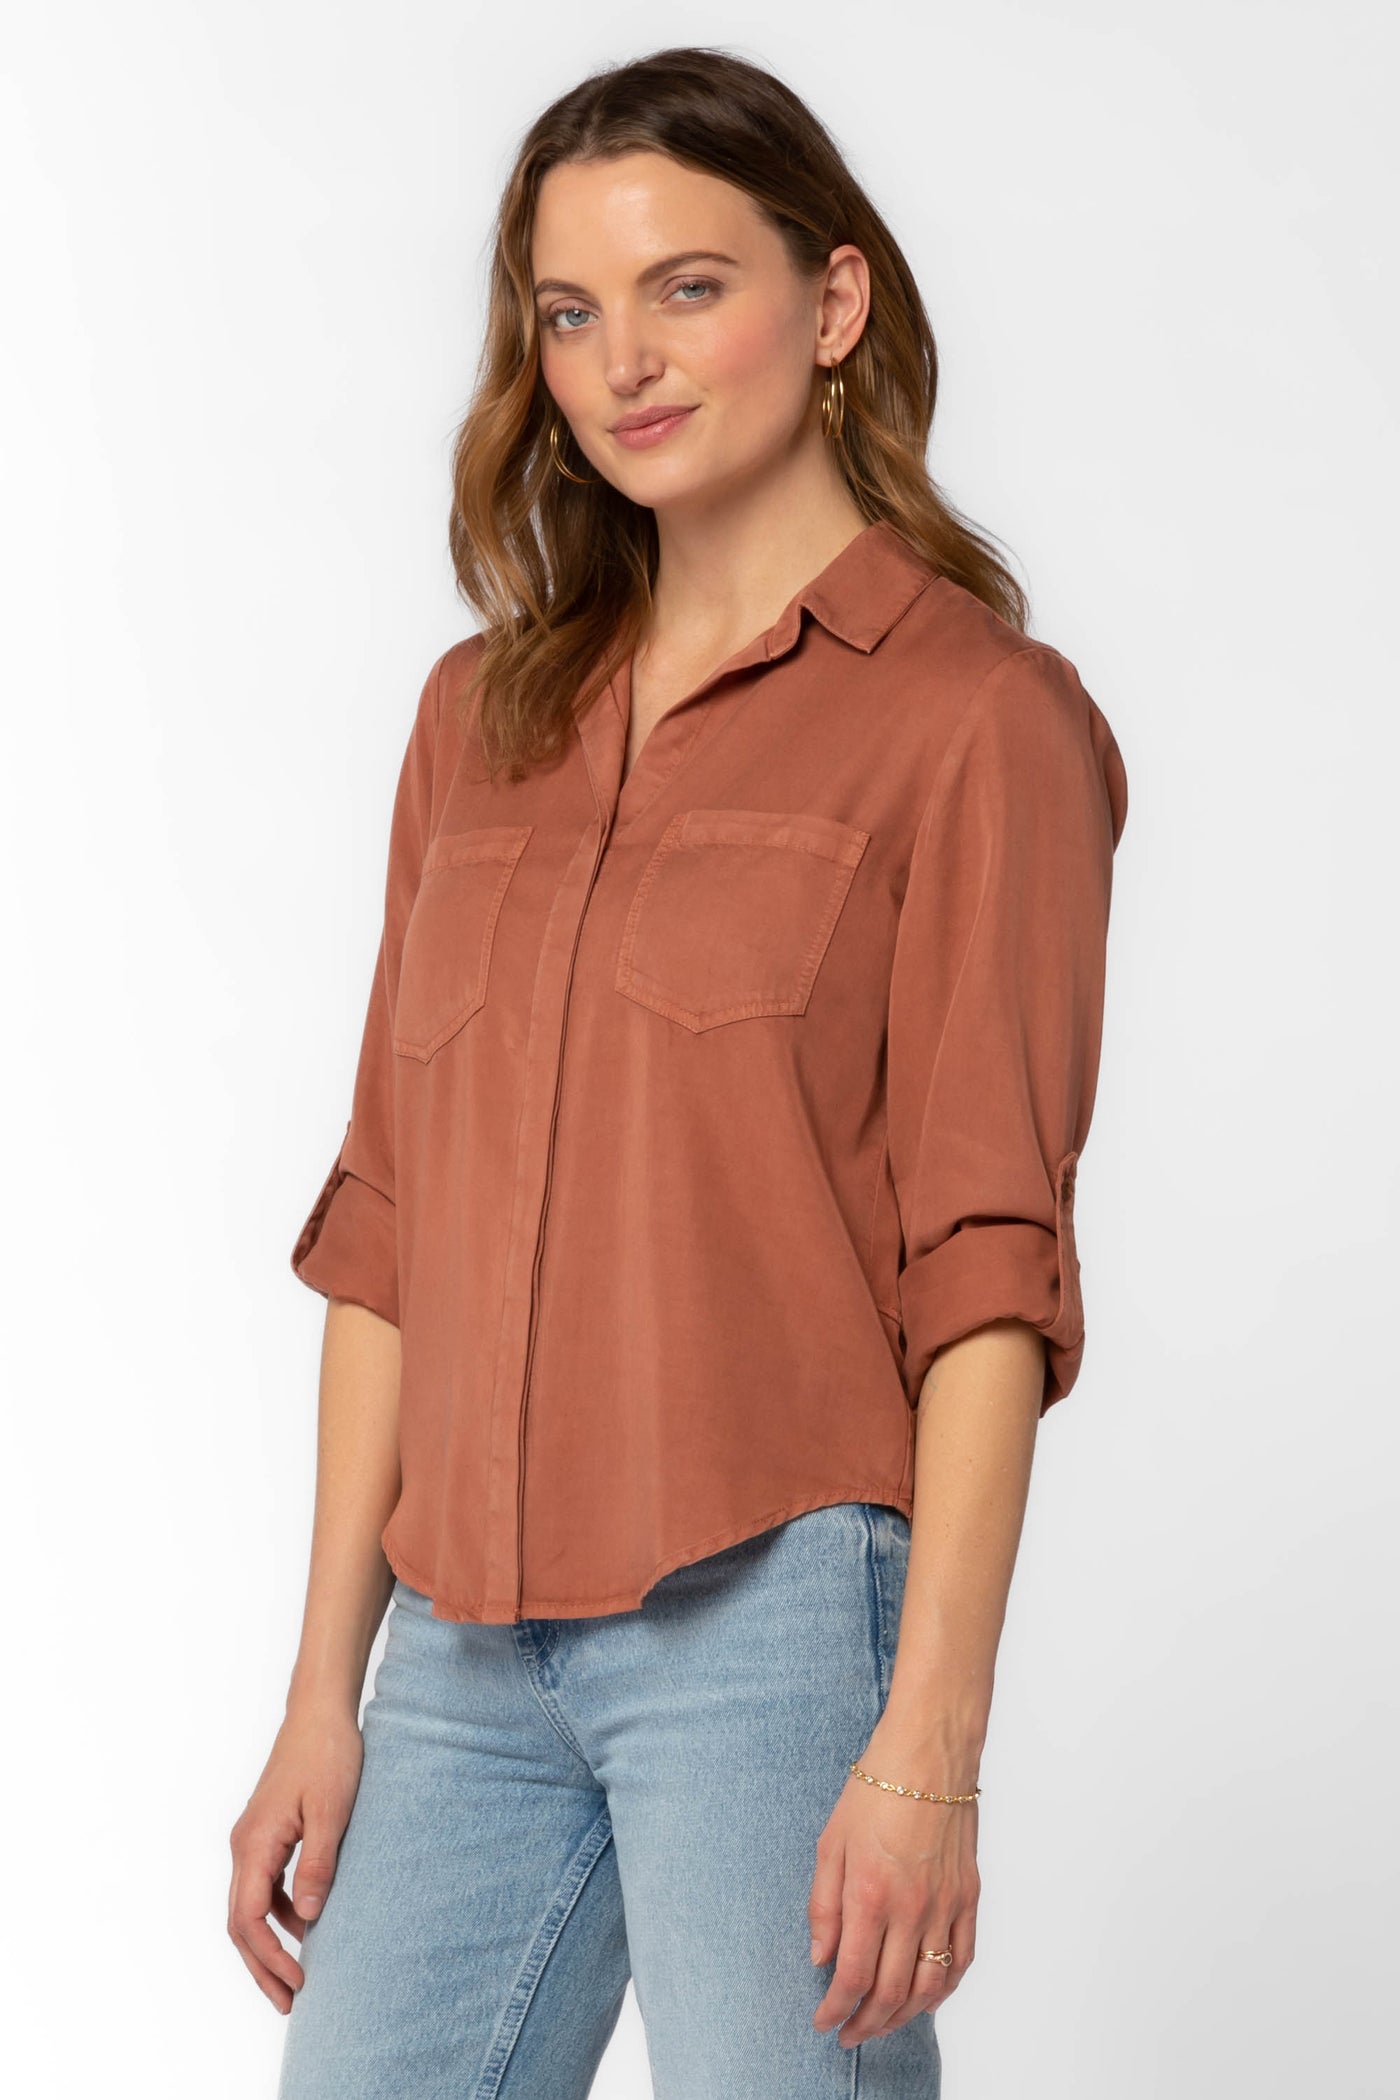 Riley Maple Shirt - Tops - Velvet Heart Clothing